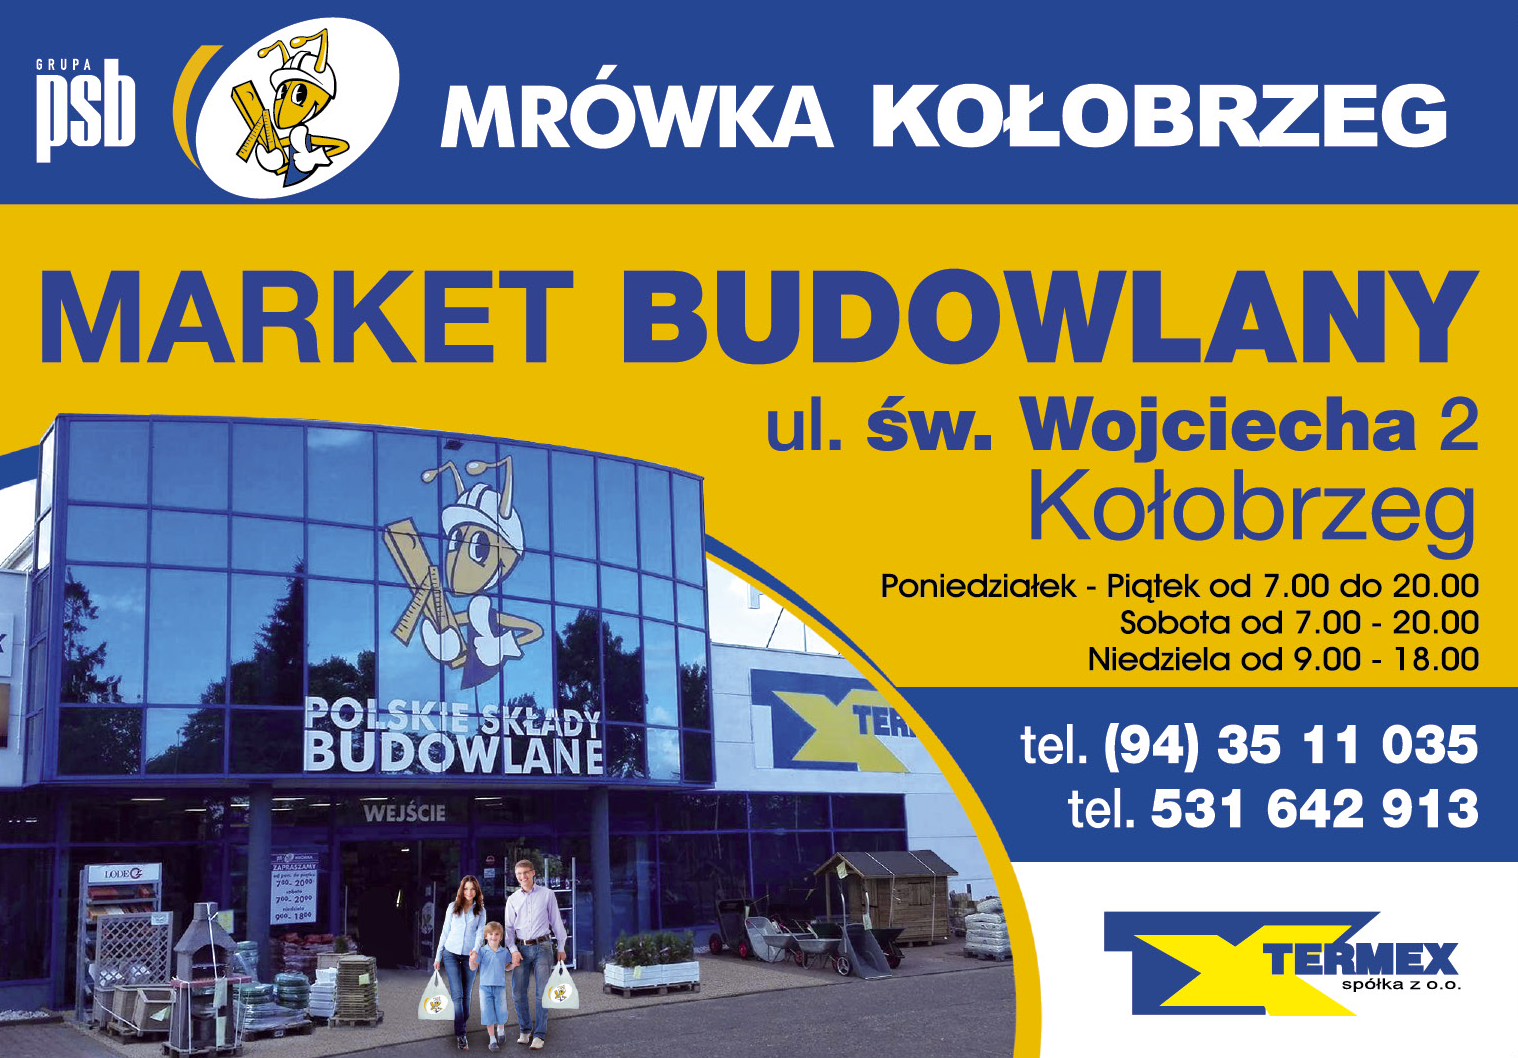 PSB MRÓWKA KOŁOBRZEG Kołobrzeg Market Budowlany 